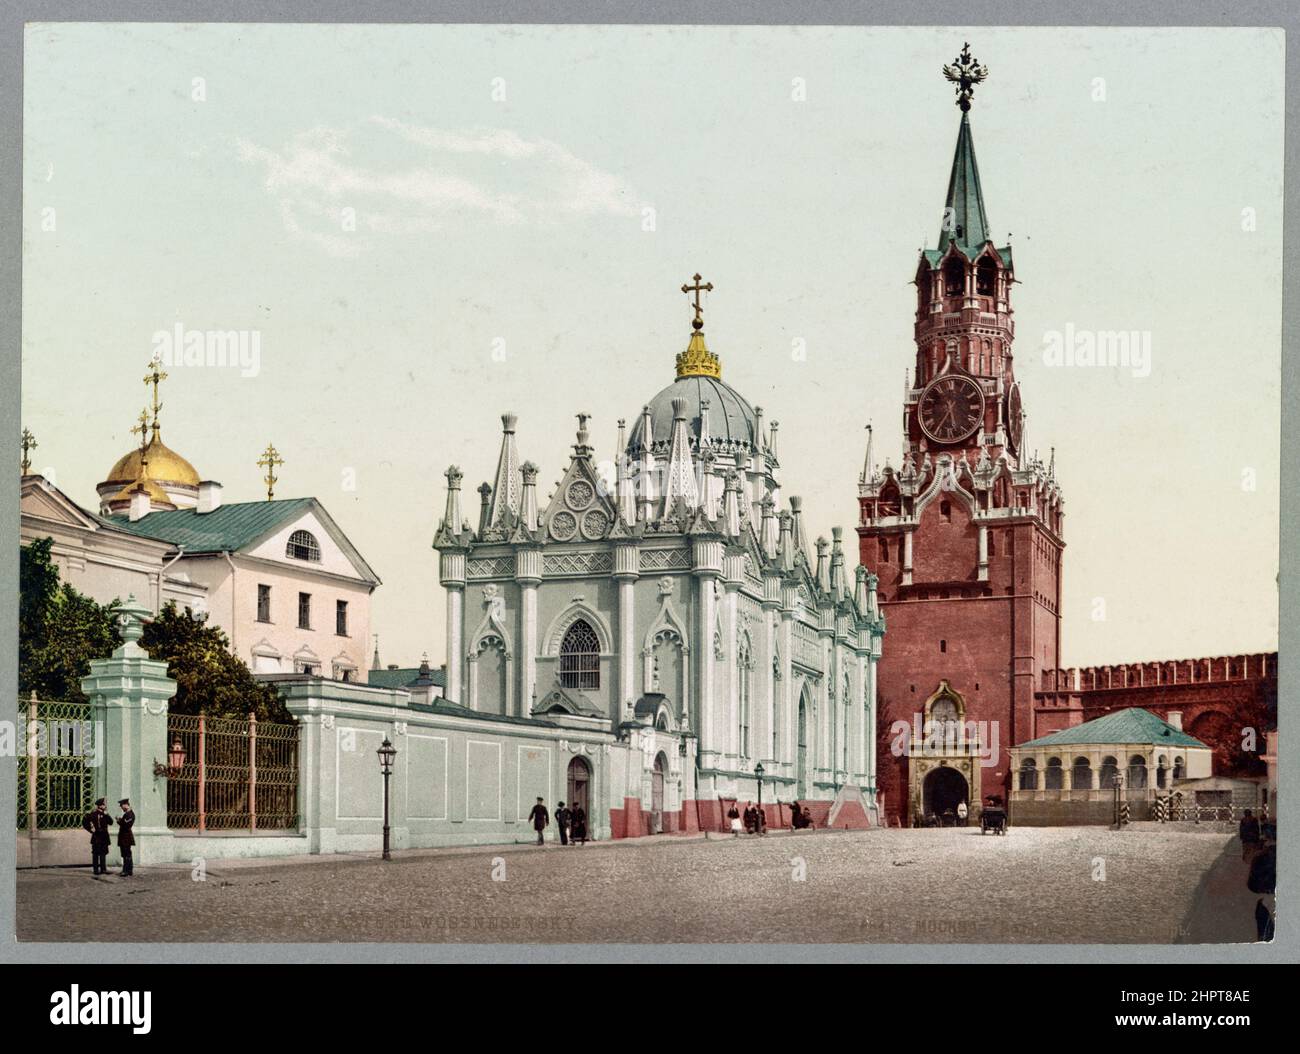 Foto del siglo 19th del Convento de la Ascensión (Convento de Starodevichy) y Puerta Spassky. Imperio ruso. 1890-1906 Convento de la Ascensión, conocido como el Starodevich Foto de stock